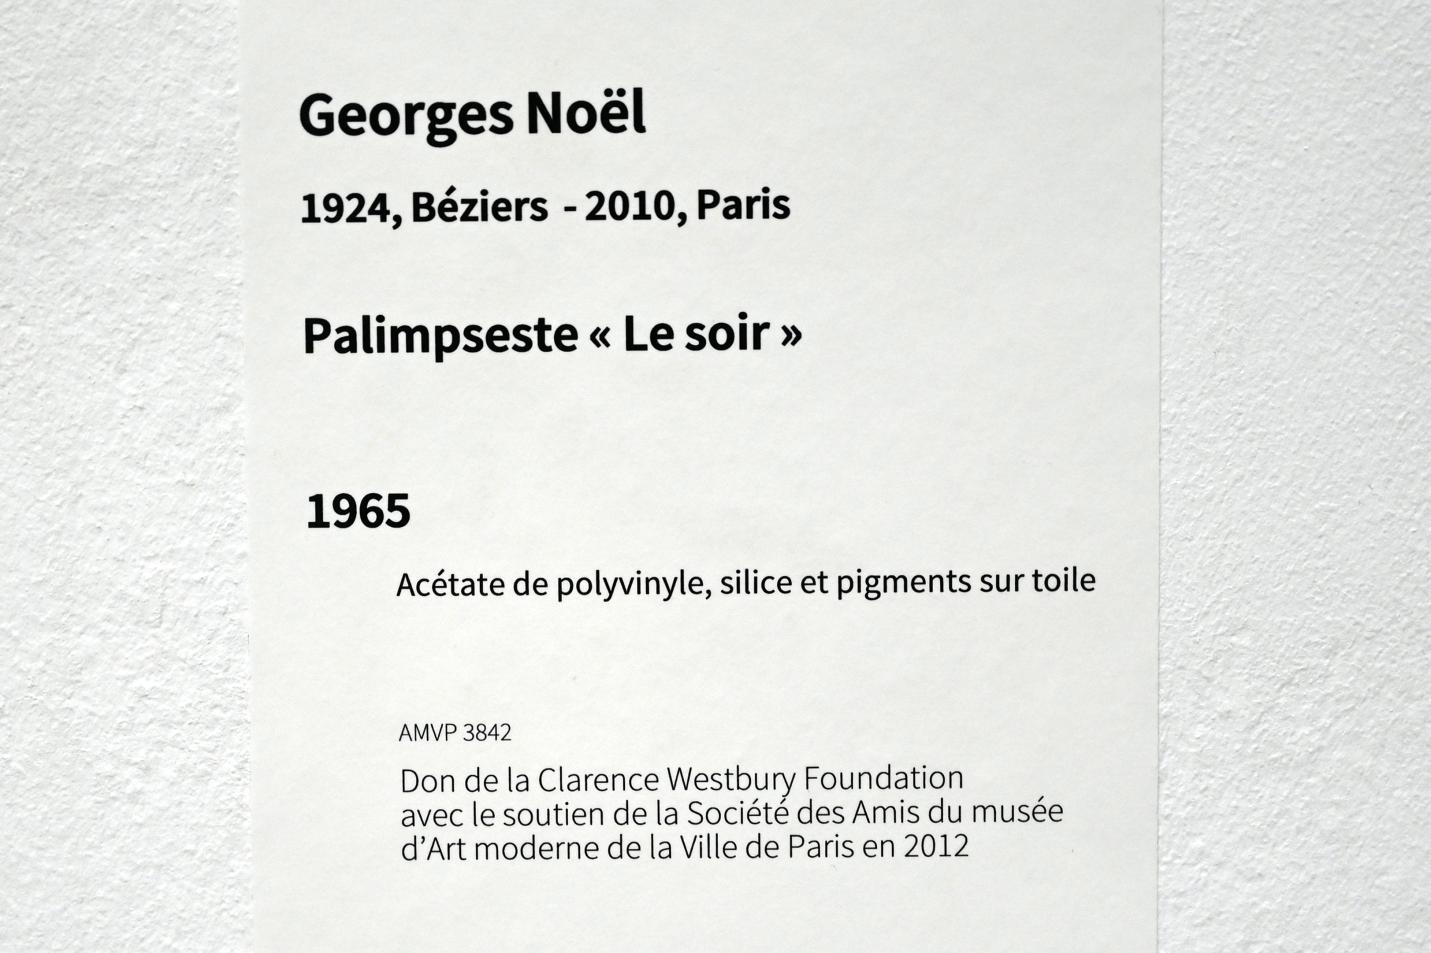 Georges Noël (1965), Palimpsest "Der Abend", Paris, Musée d’art moderne de la Ville de Paris, Saal 7, 1965, Bild 2/2